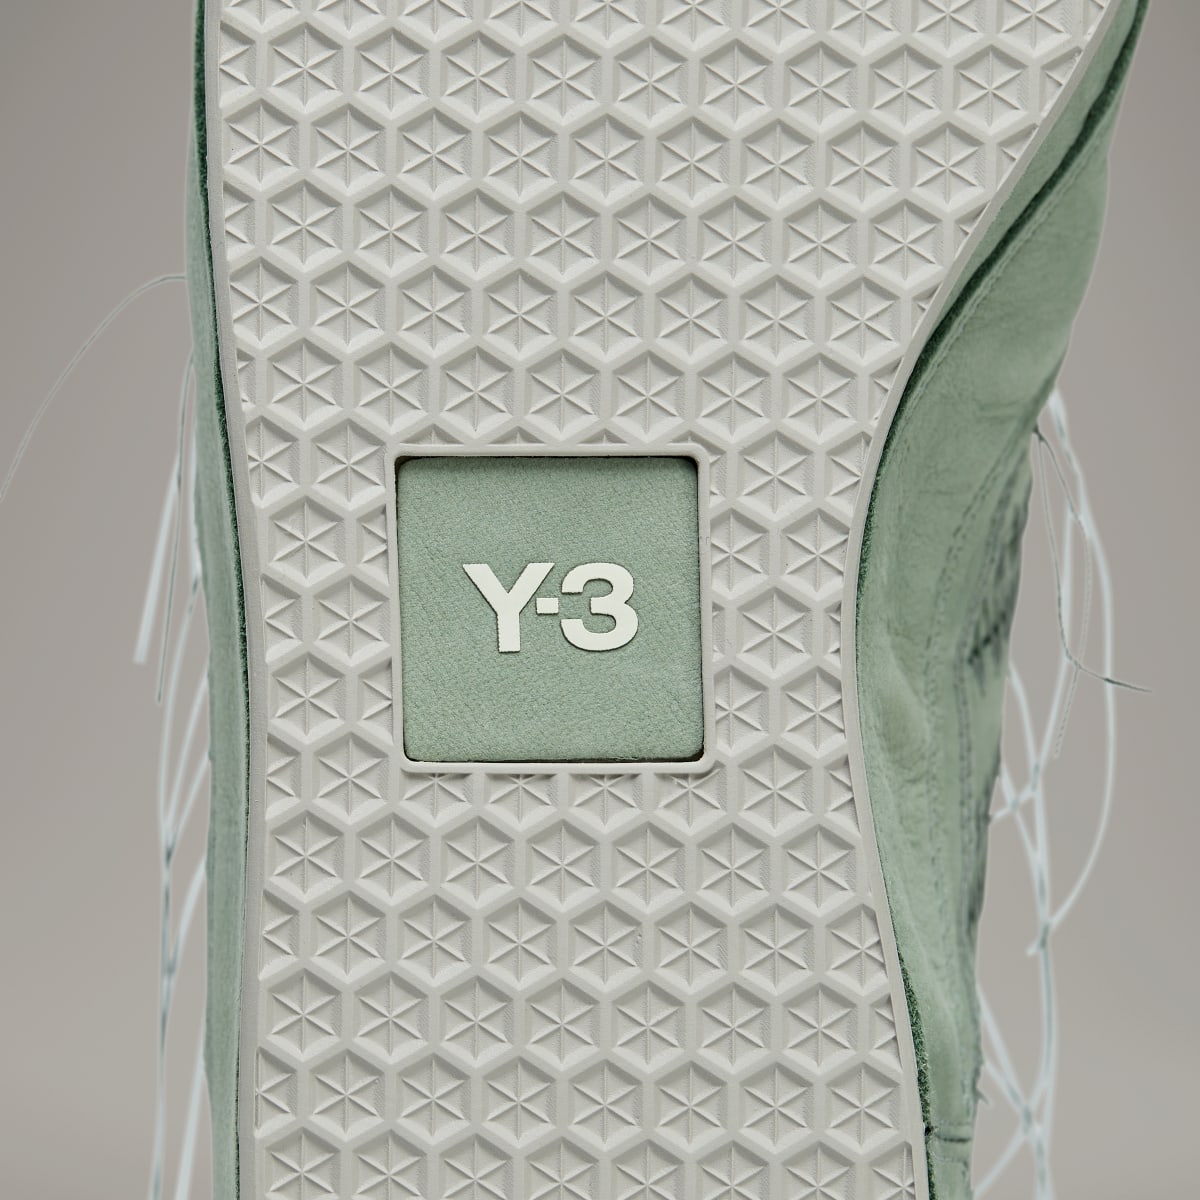 Adidas Y-3 Gazelle. 11